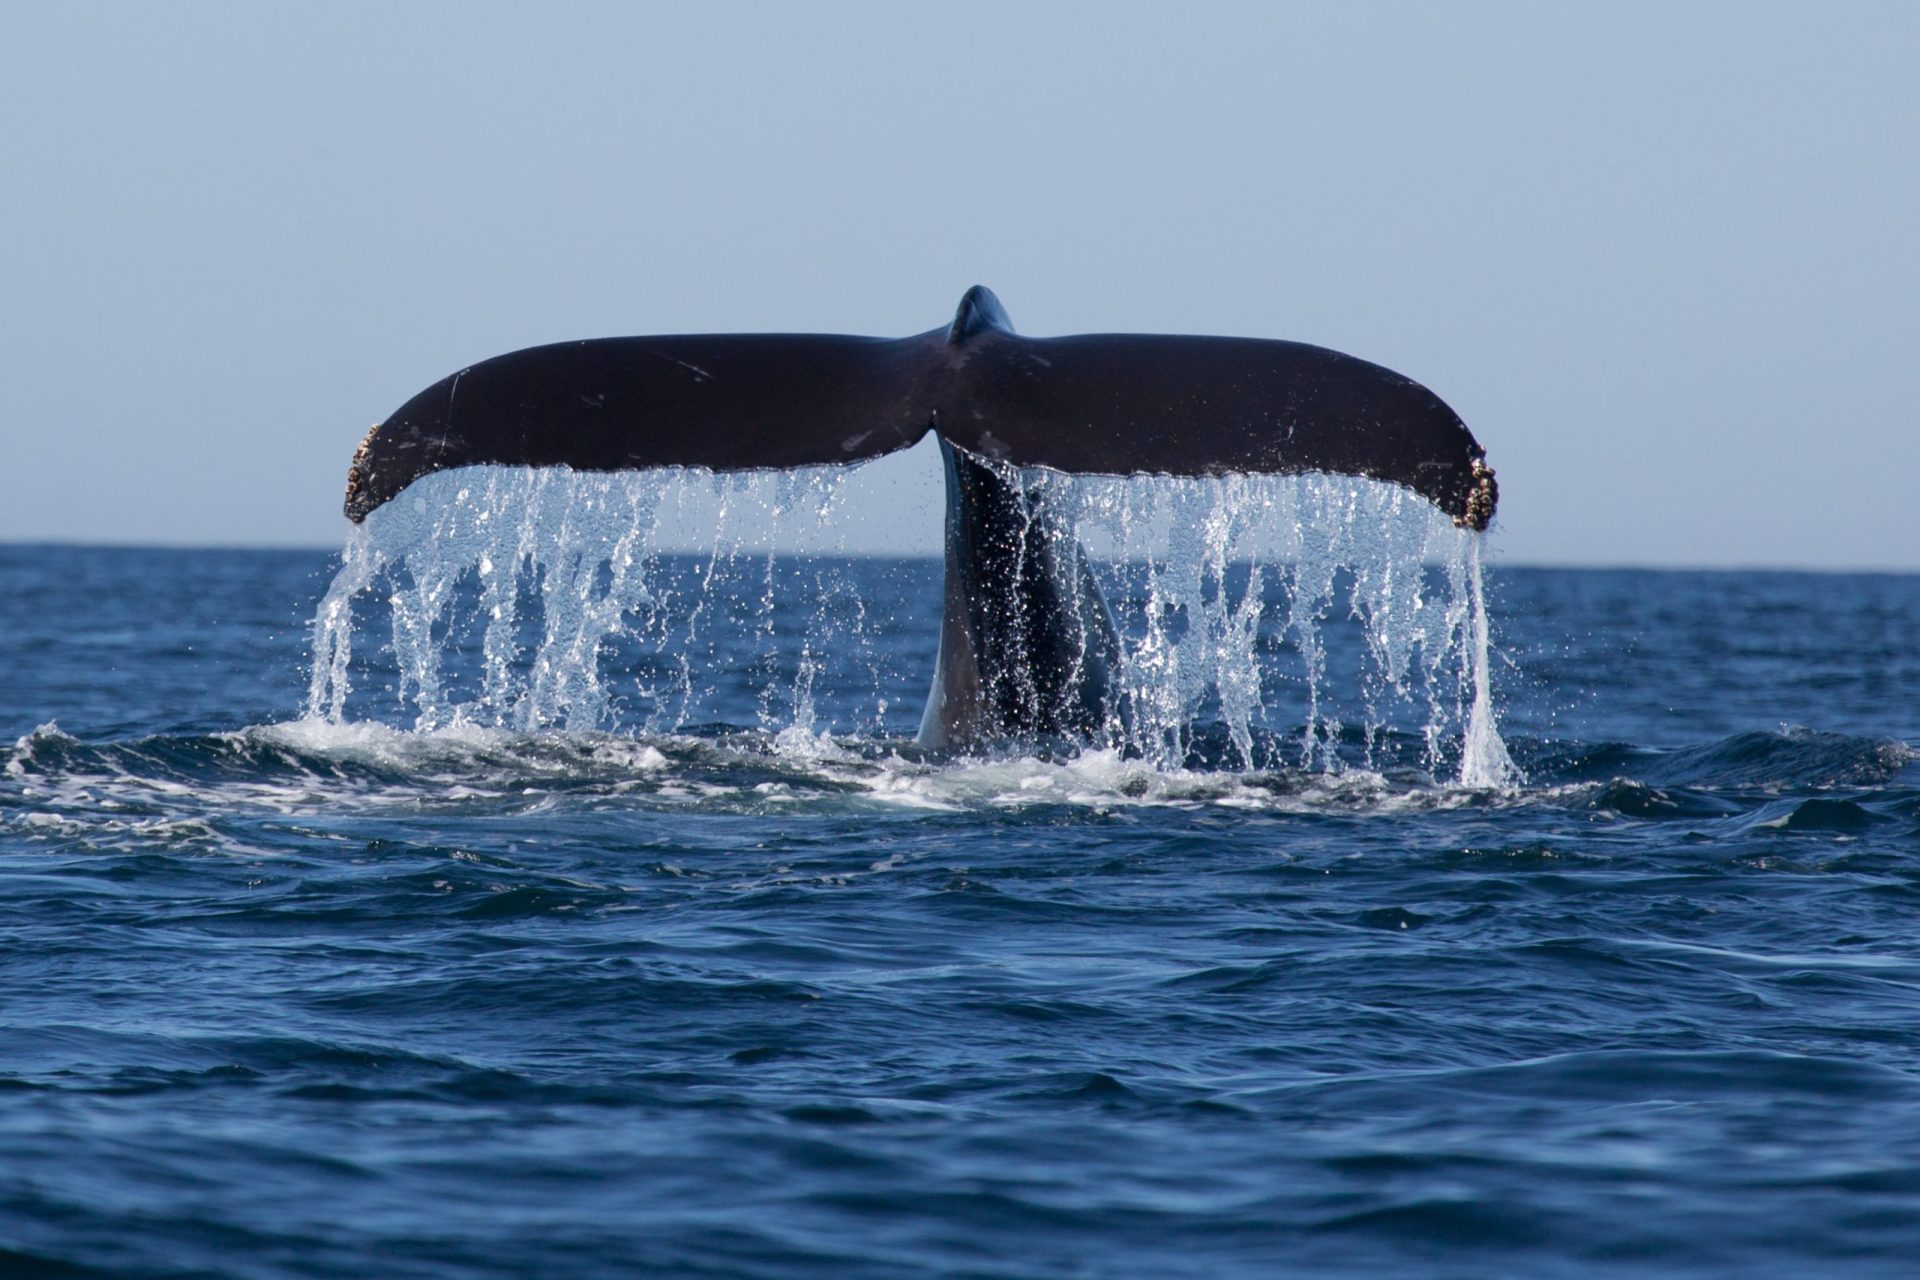 Baleia rara deu à costa em Portugal